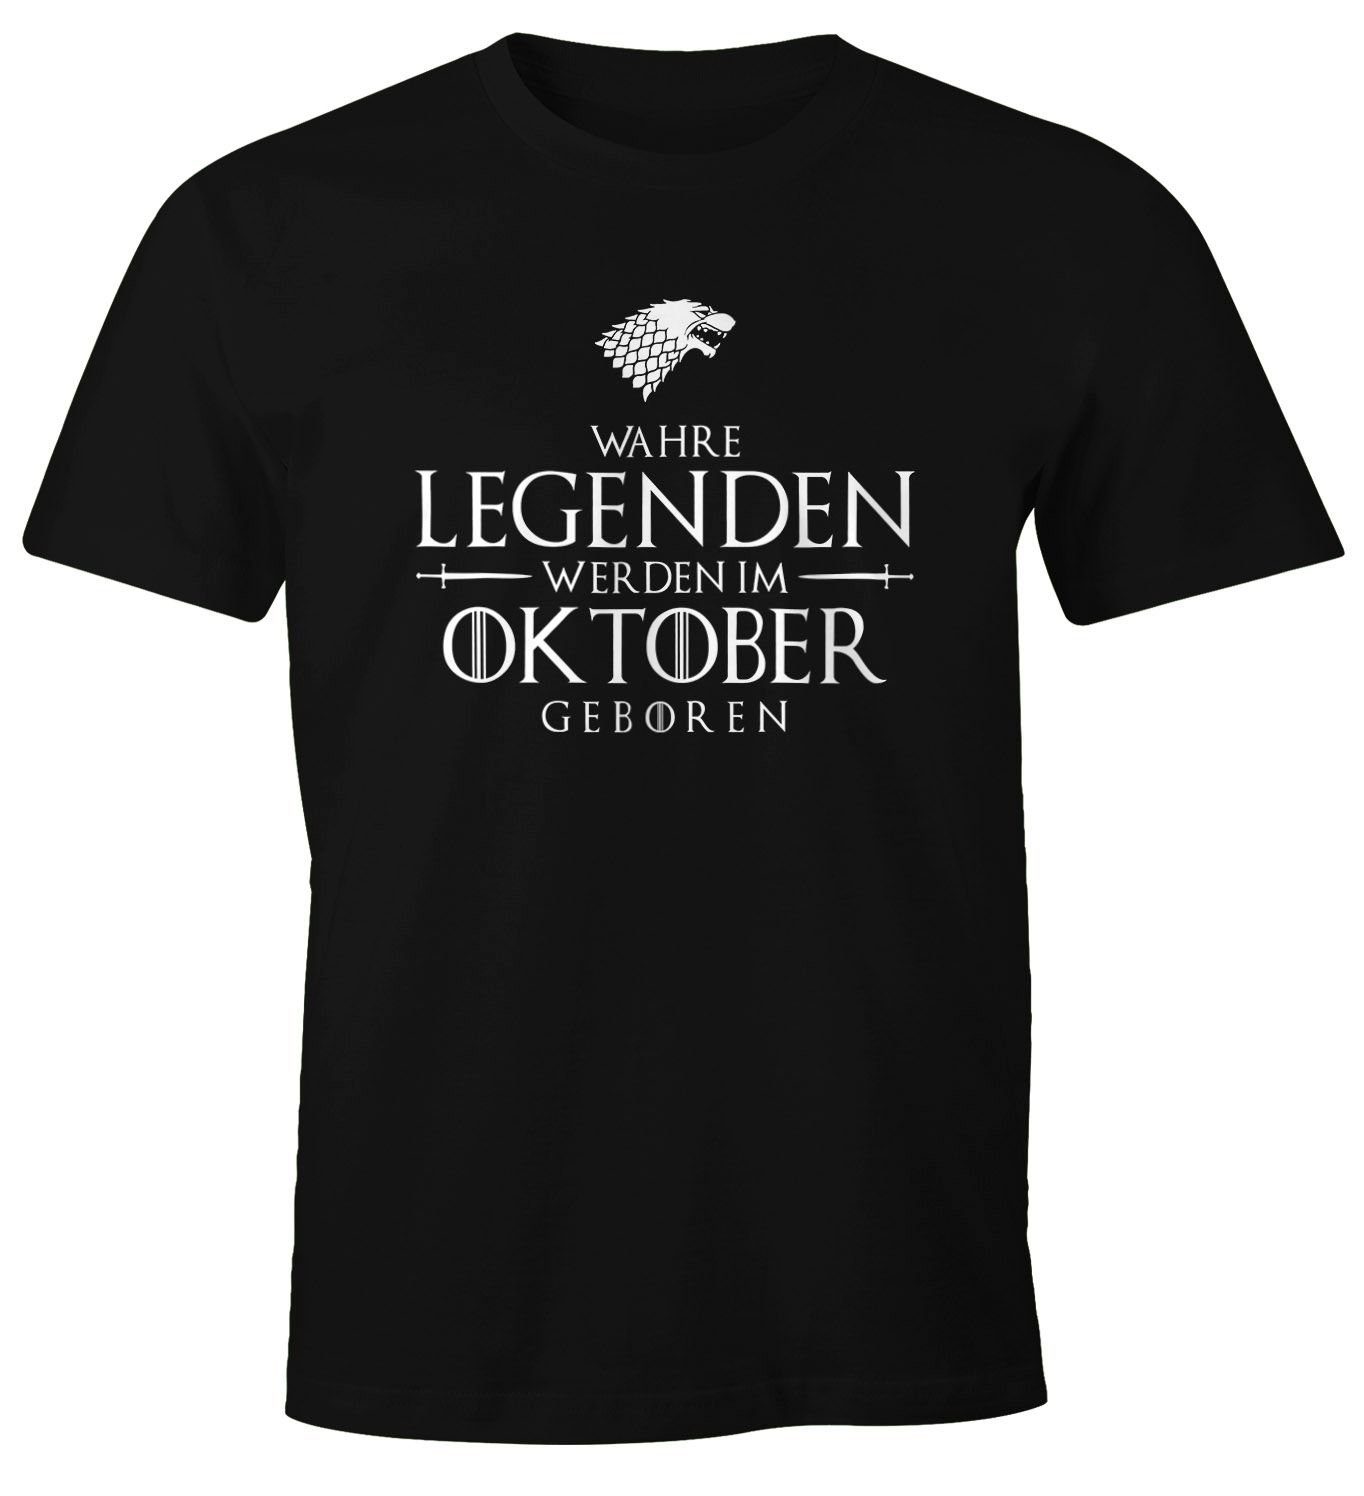 Print-Shirt T-Shirt Fun-Shirt Herren Object] im Oktober geboren MoonWorks werden Moonworks® [object Wahre Print schwarz Legenden mit